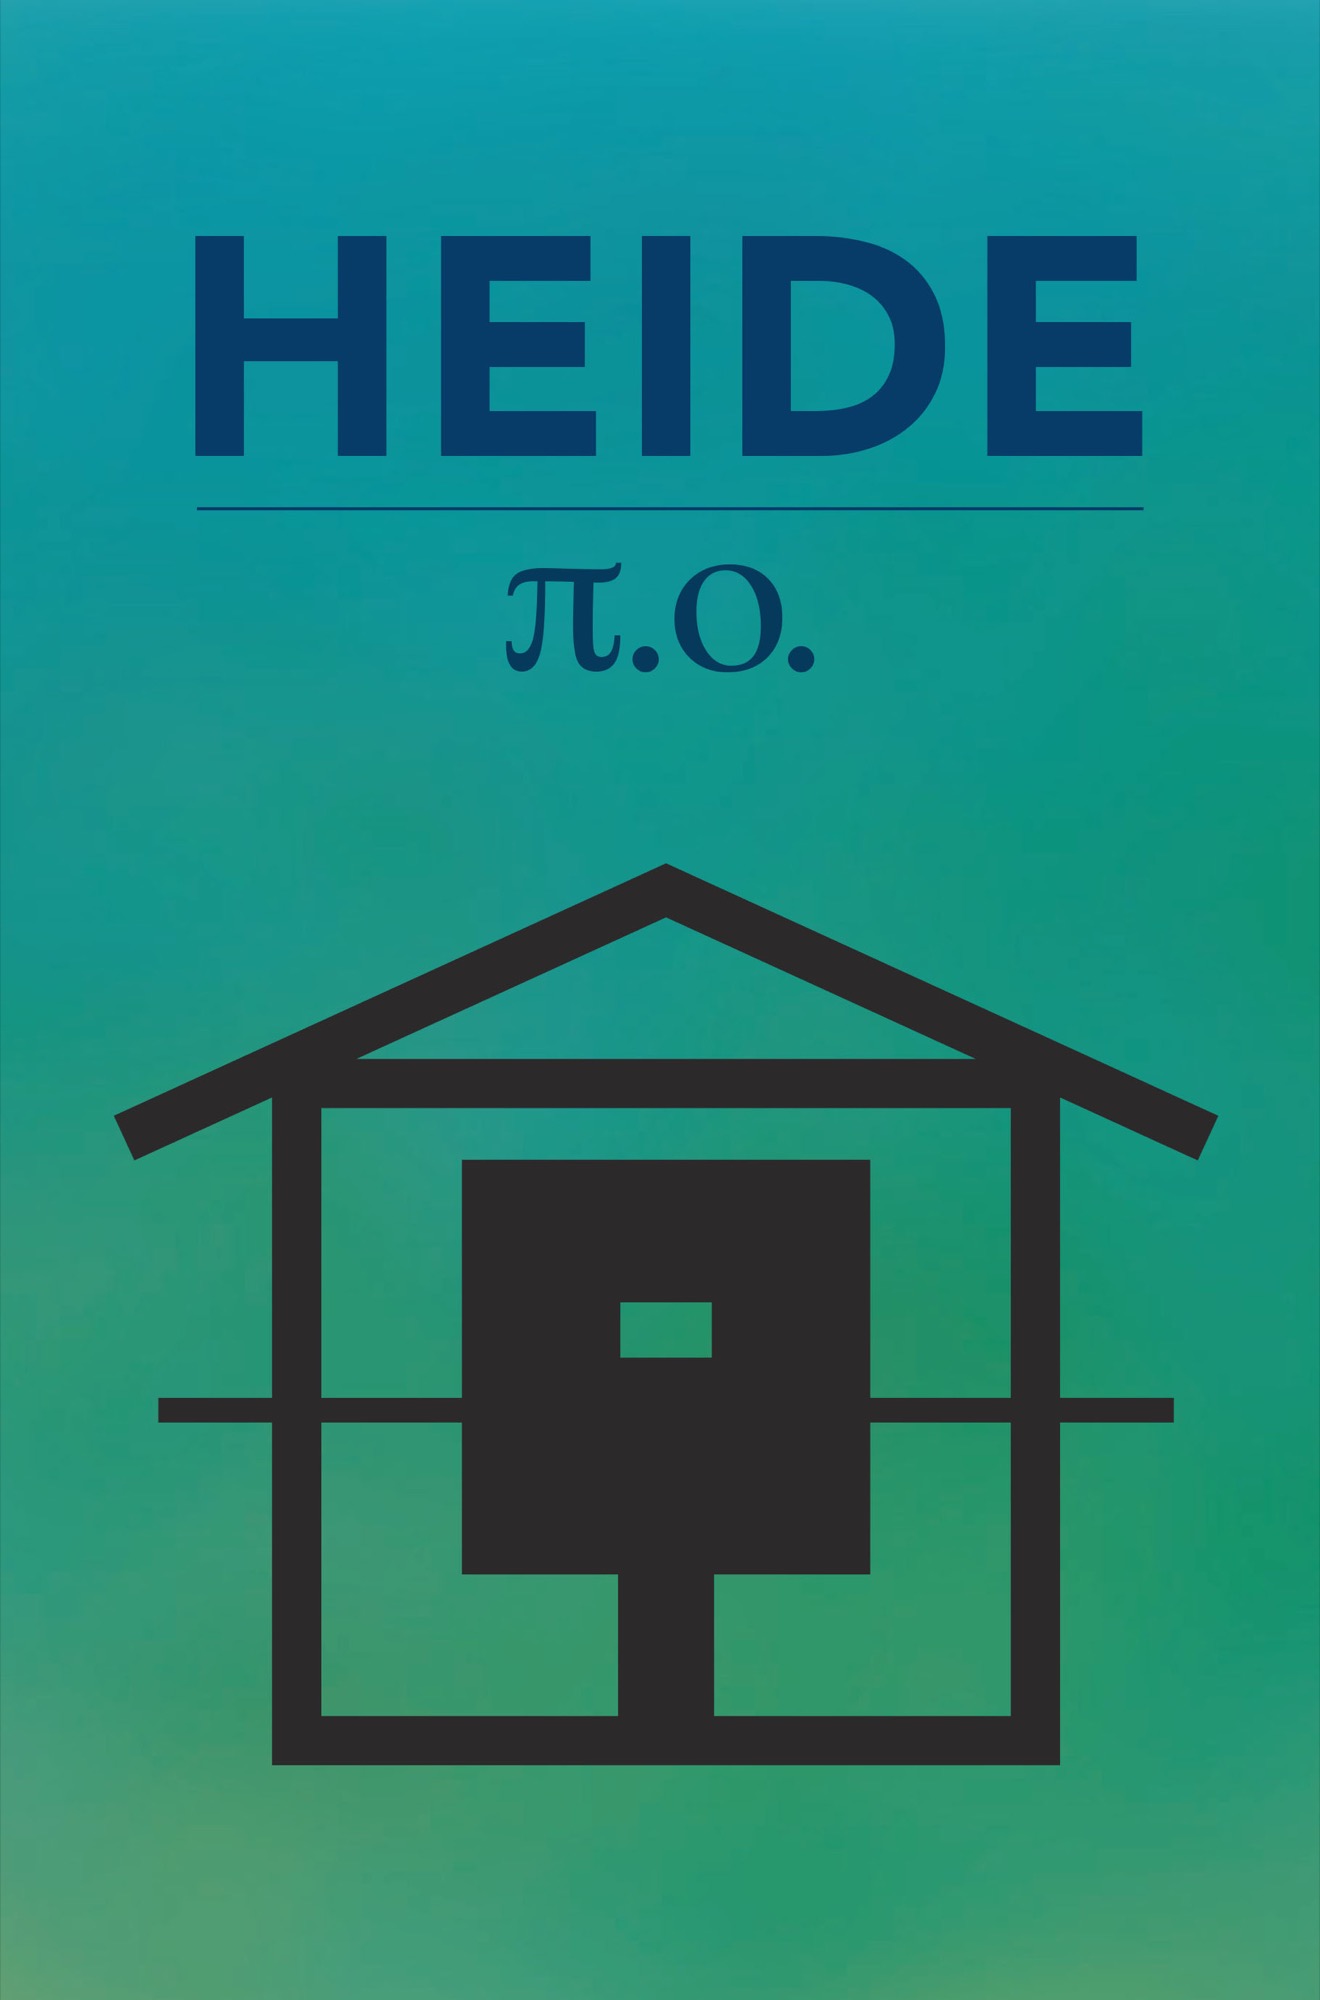 π.o., <em>Heide</em> (Sydney: Giramondo Publishing, October 2019). Cover image by Sandy Caldow.